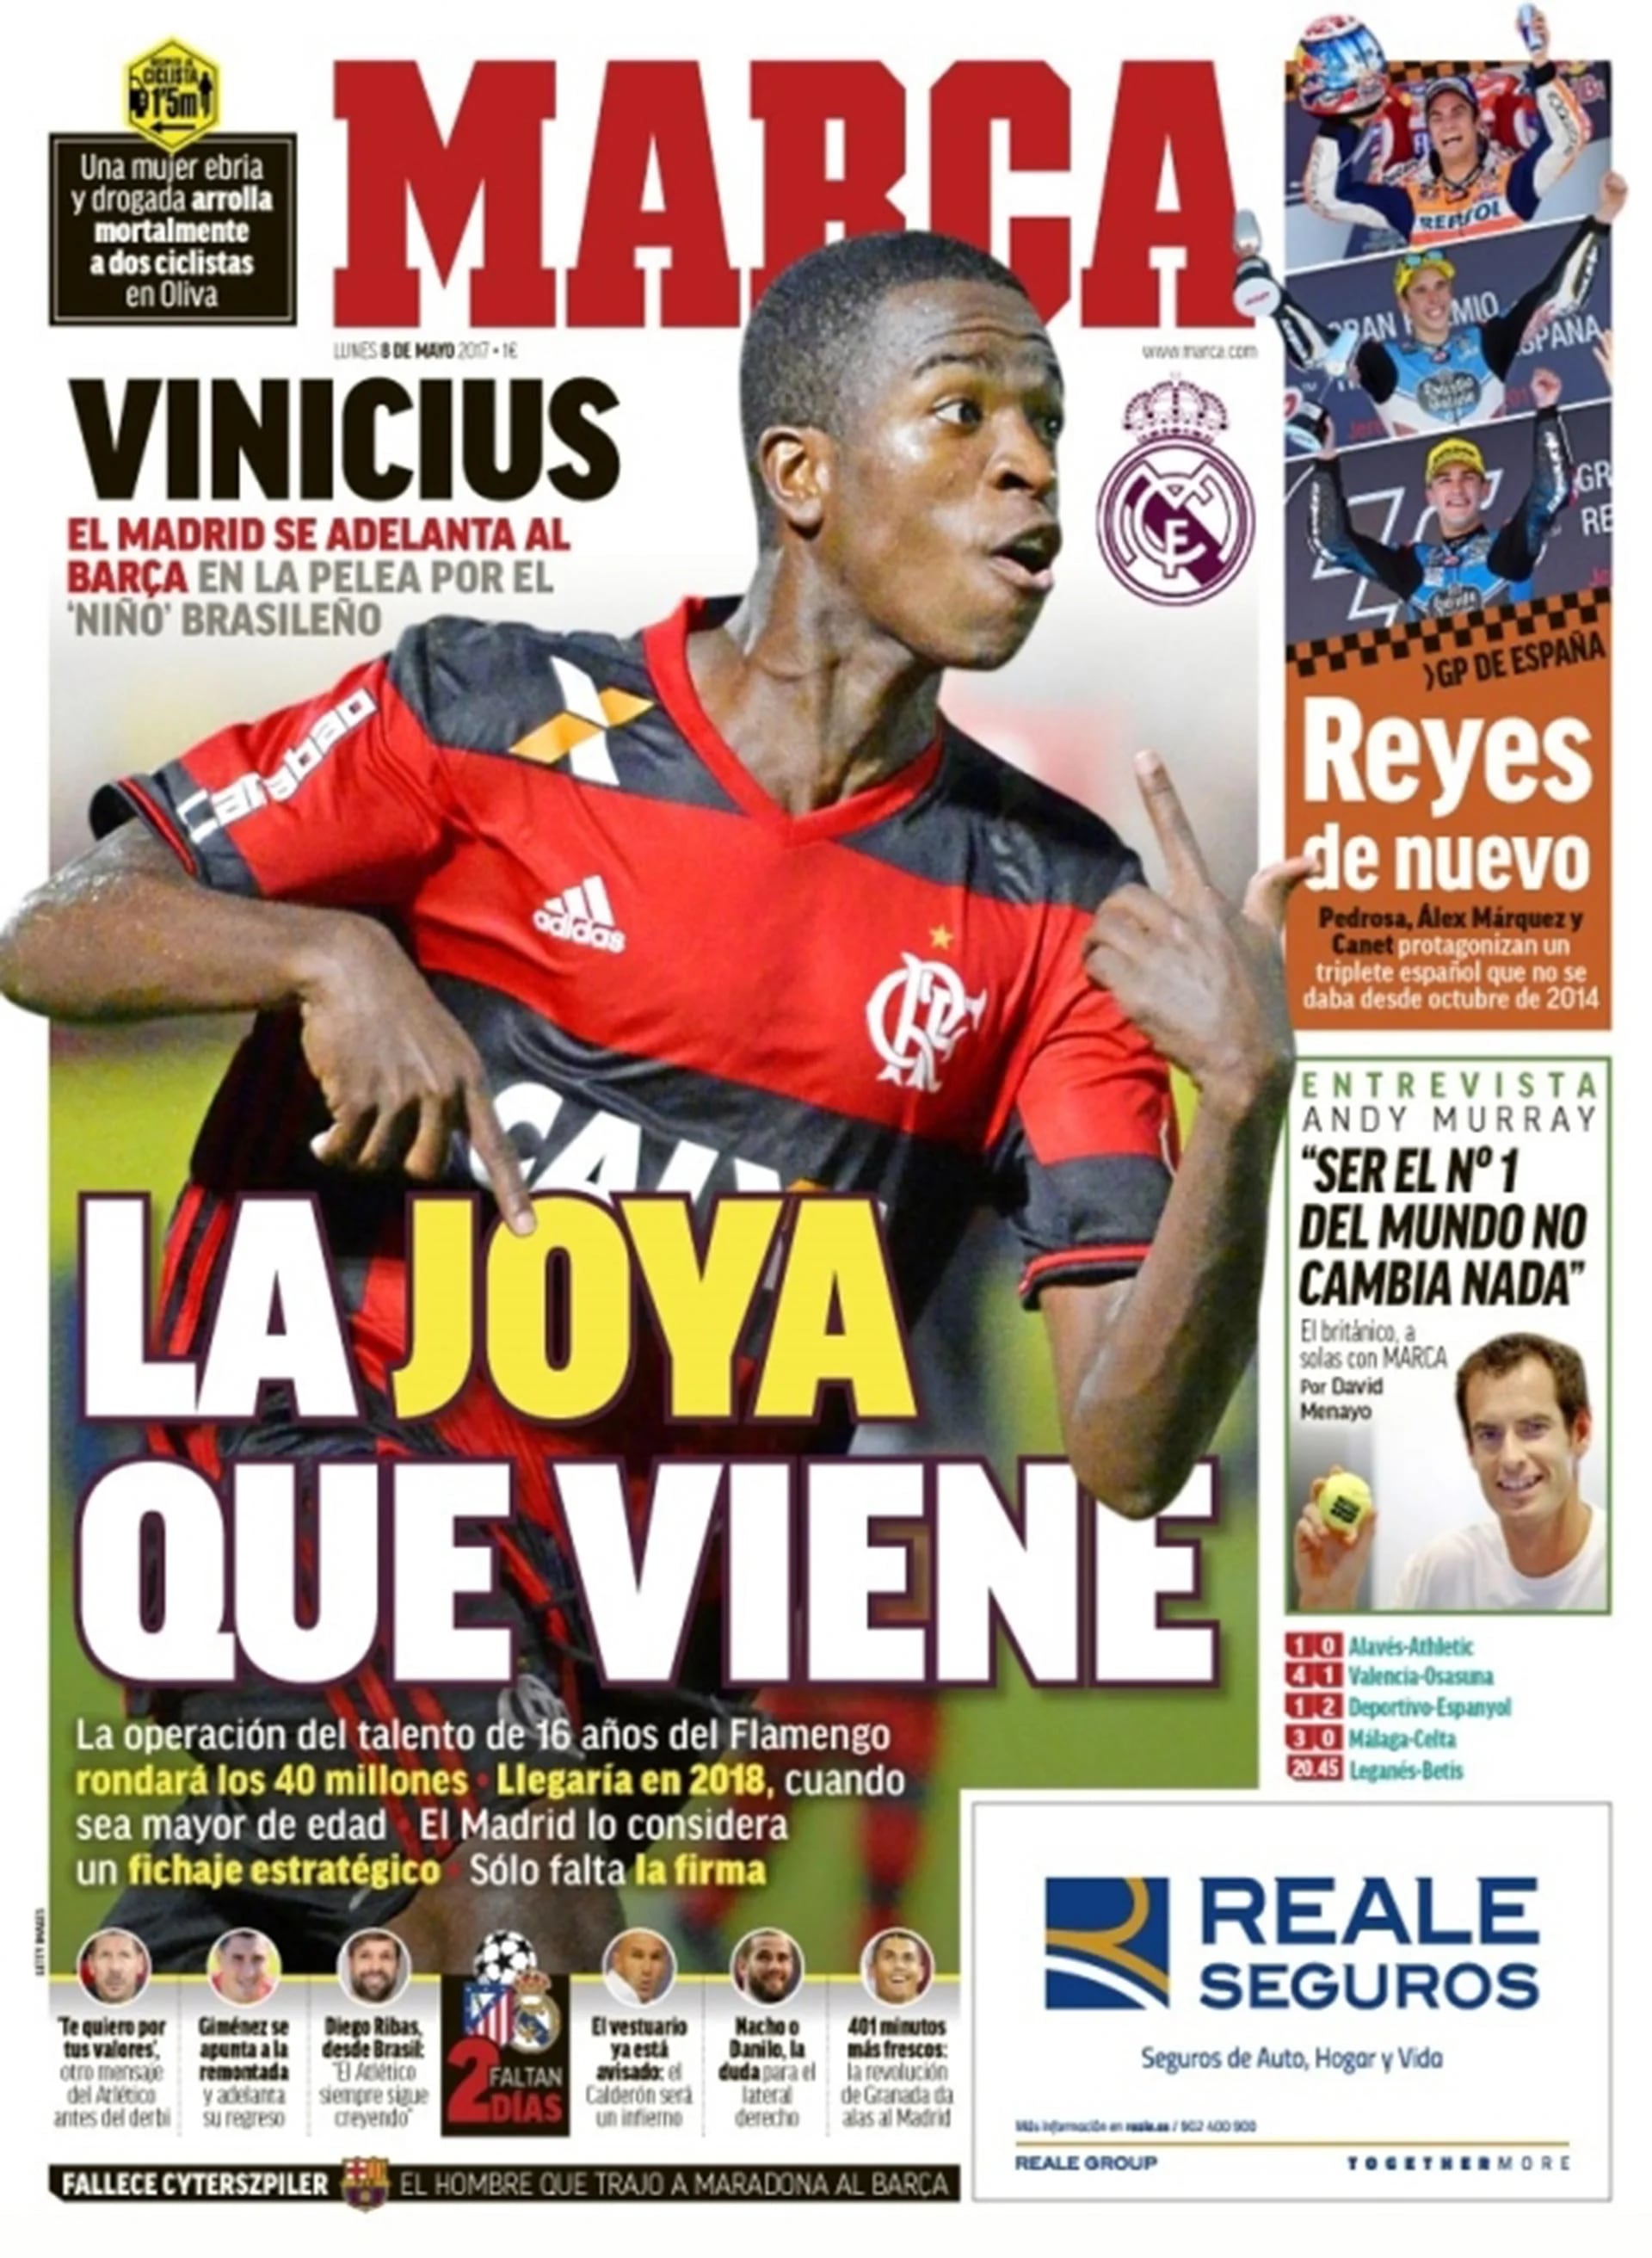 Los medios españoles ya lo catalogan como la próxima “joya” del fútbol mundial